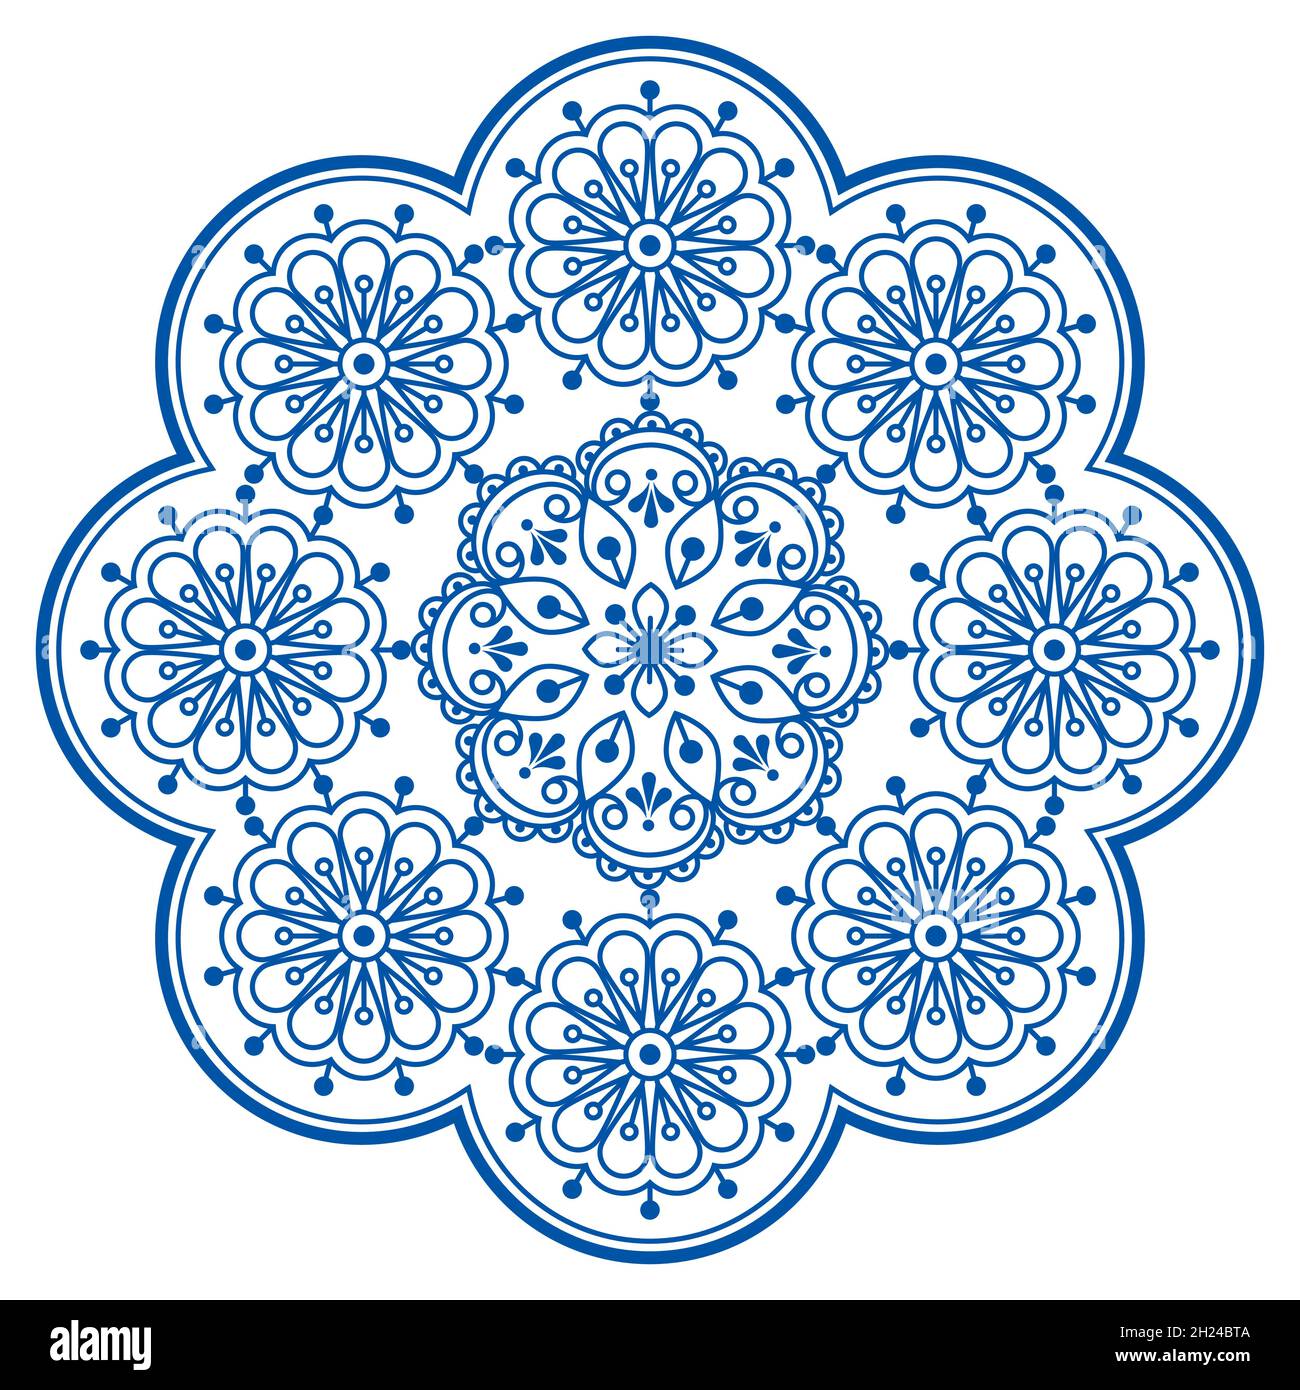 Retro skandinavischen Vektor-Stickerei Folk Art Stil Mandala Design mit Blumen perfekt für Grußkarte oder Hochzeit Einladung Stock Vektor